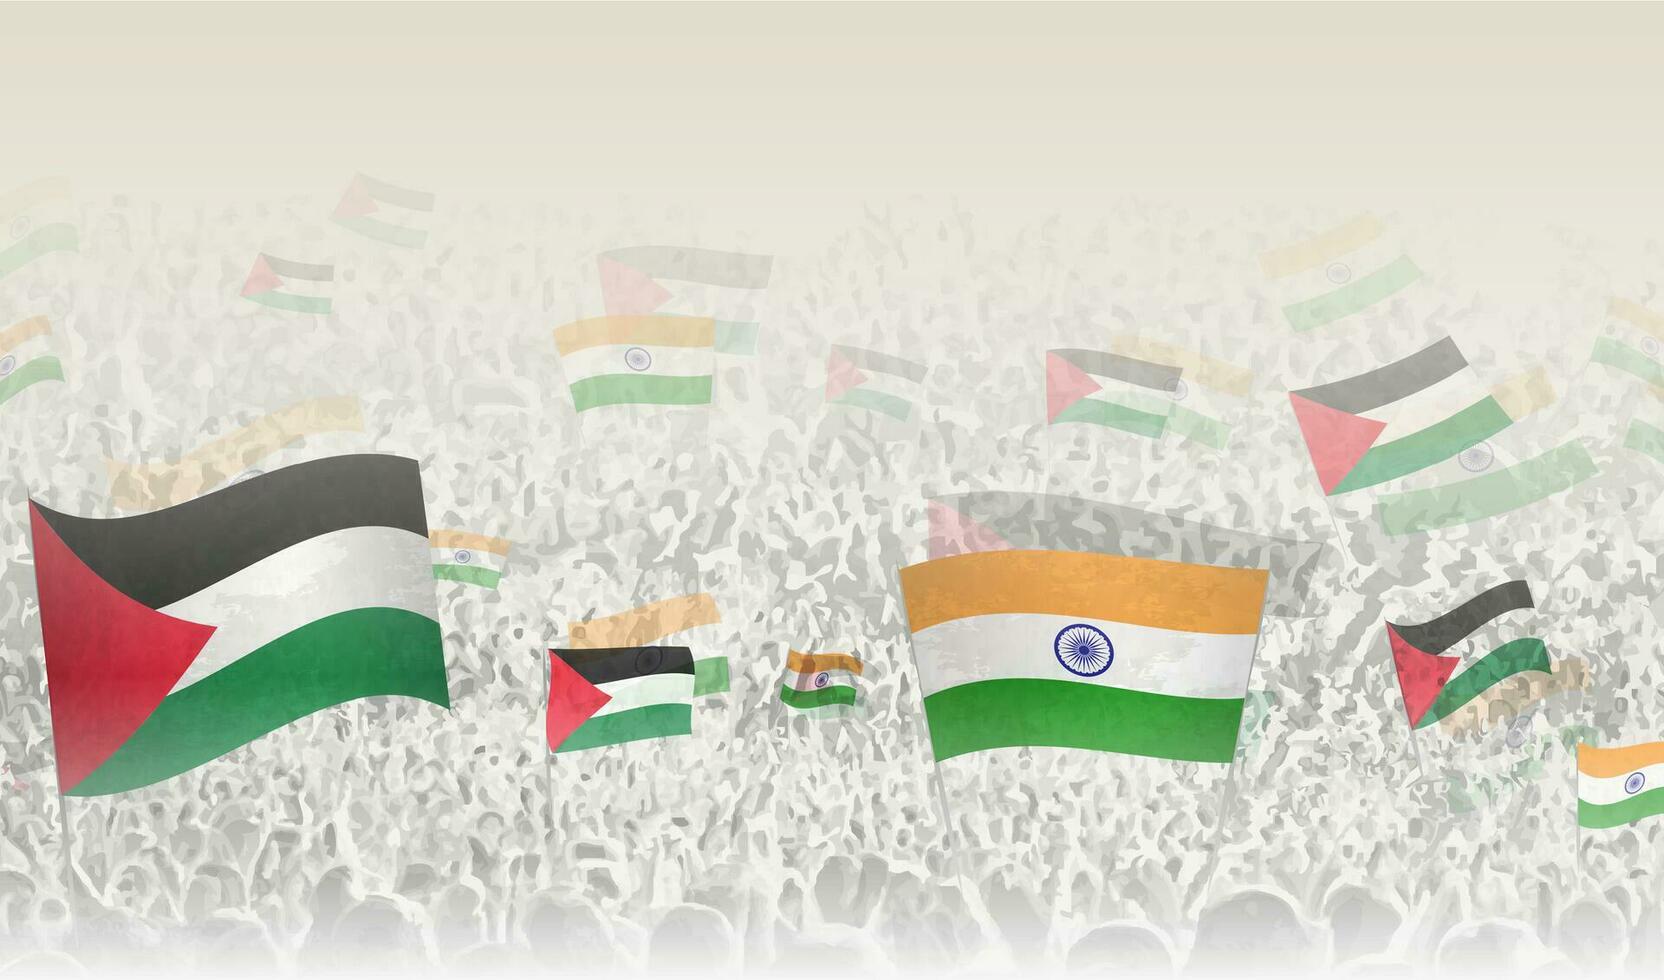 Palästina und Indien Flaggen im ein Menge von Jubel Personen. vektor